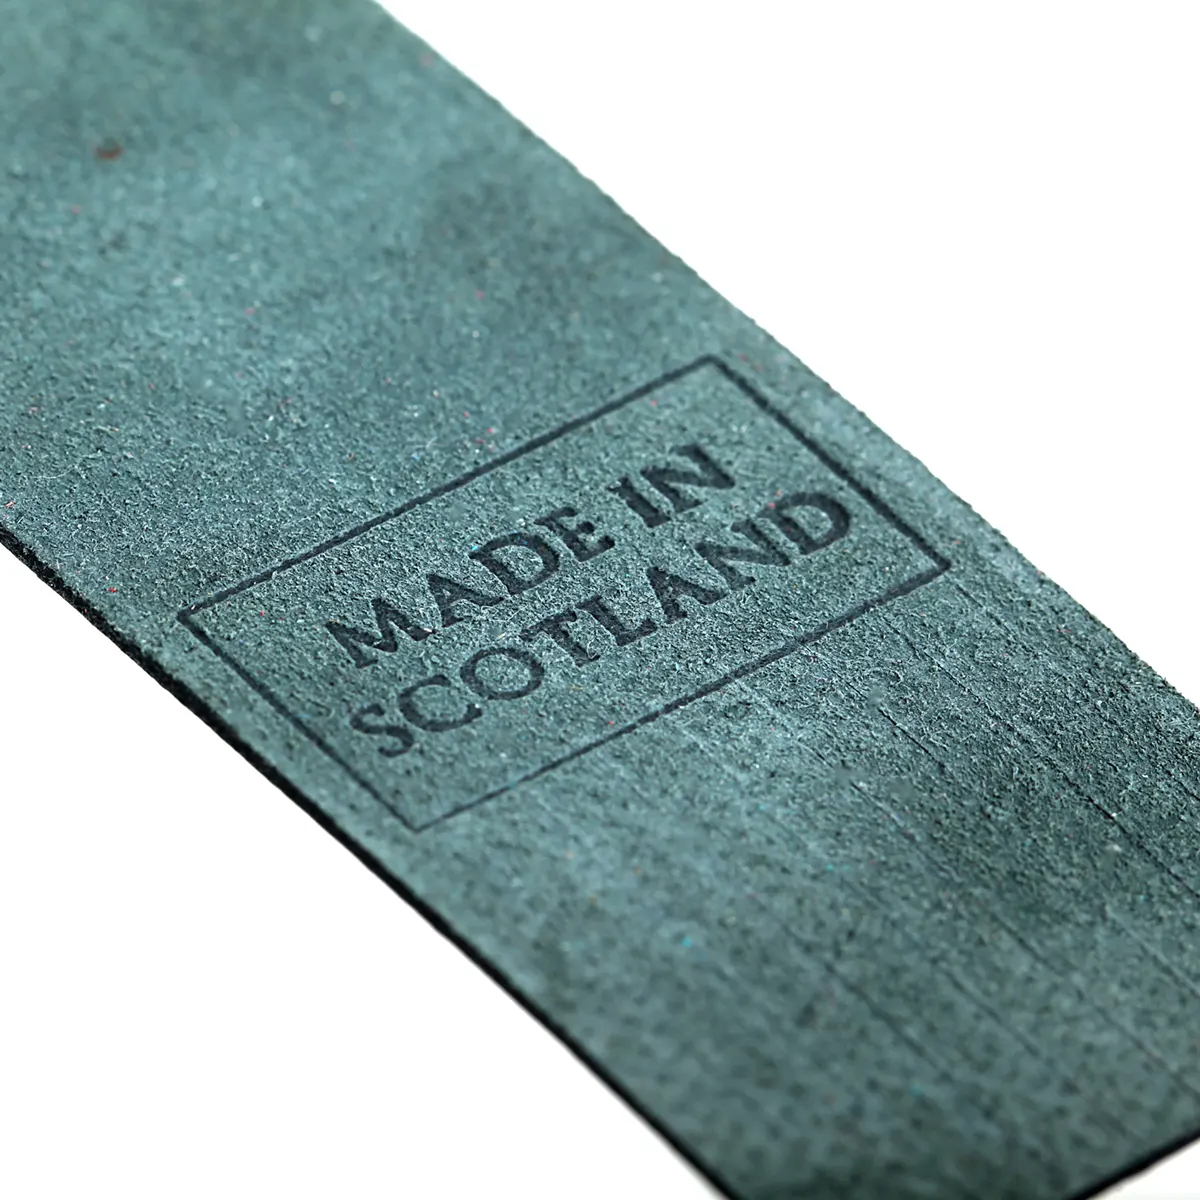 Glasgow - Lesezeichen aus Leder in Grün - Made in Scotland